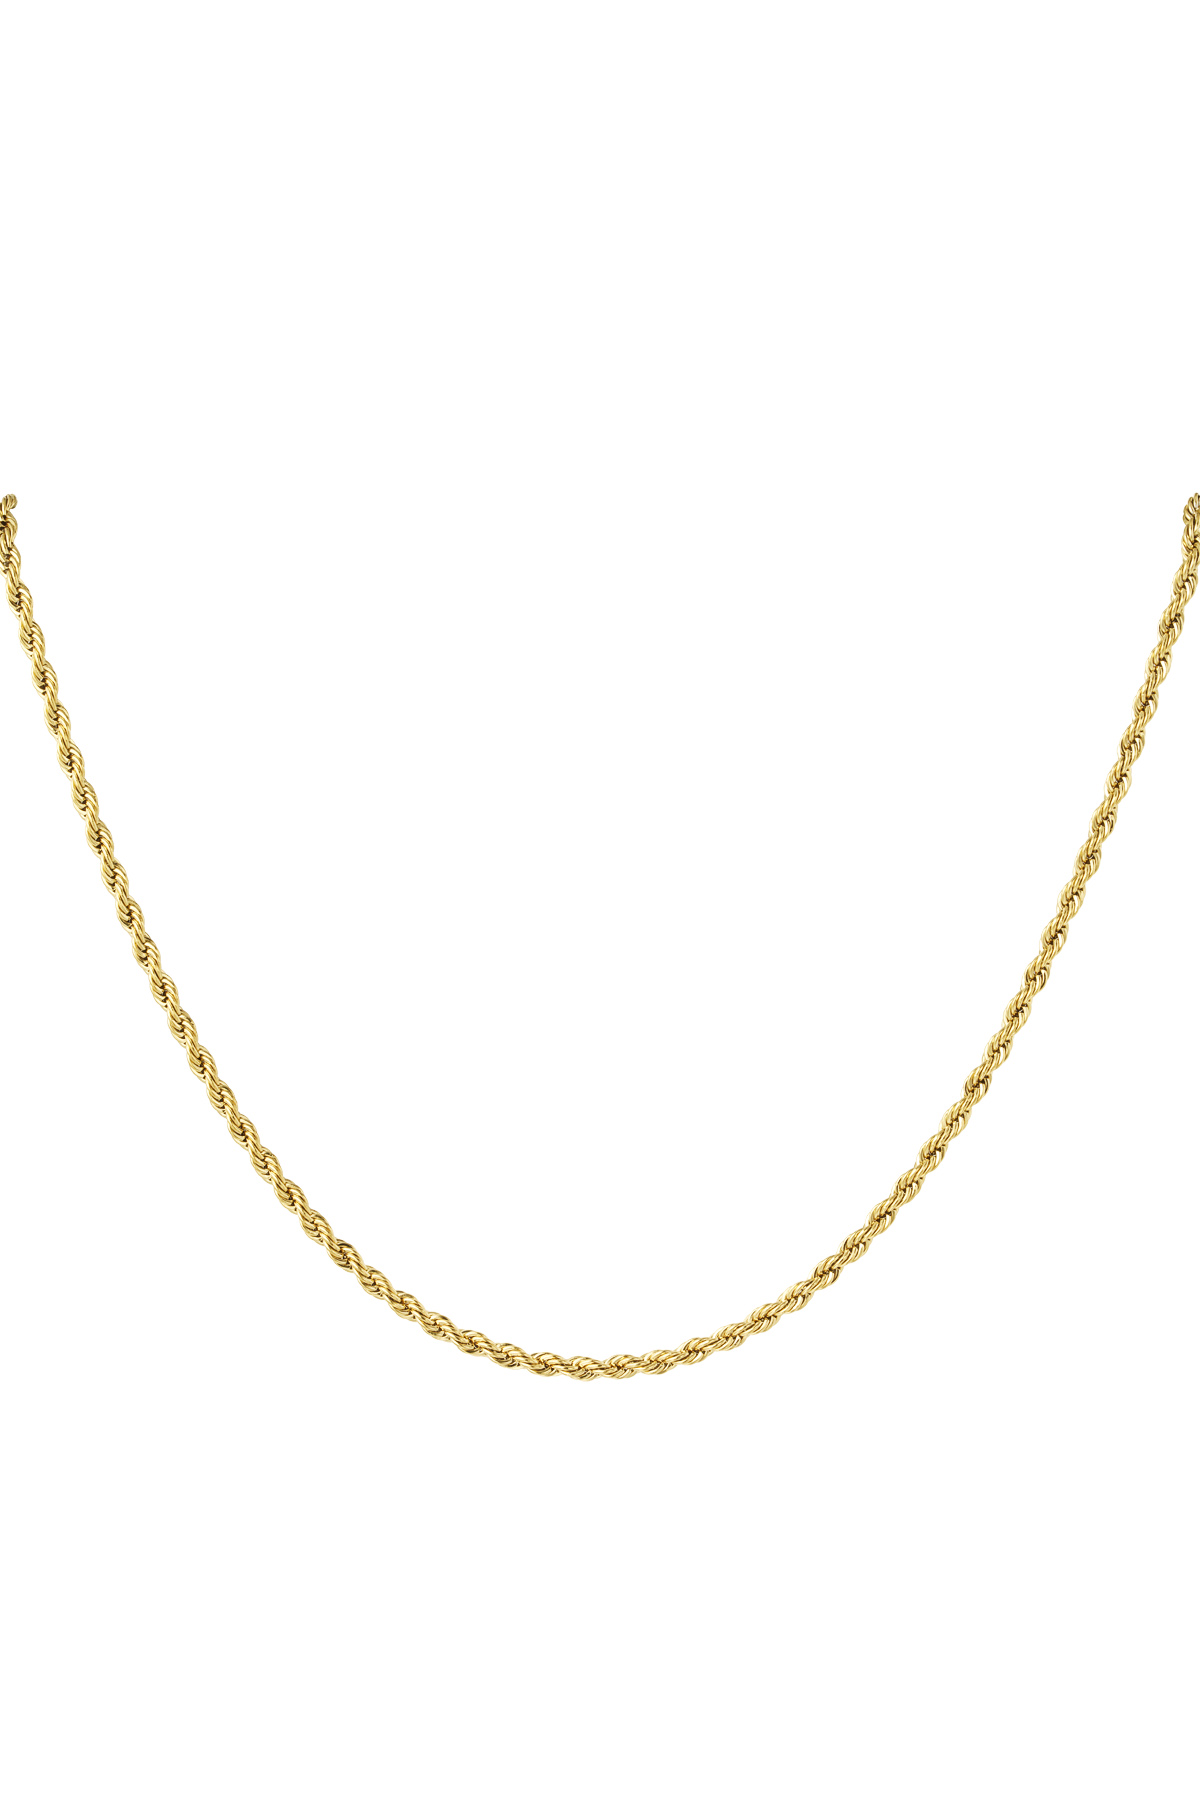 Unisex-Halskette gedreht 60 cm – Gold